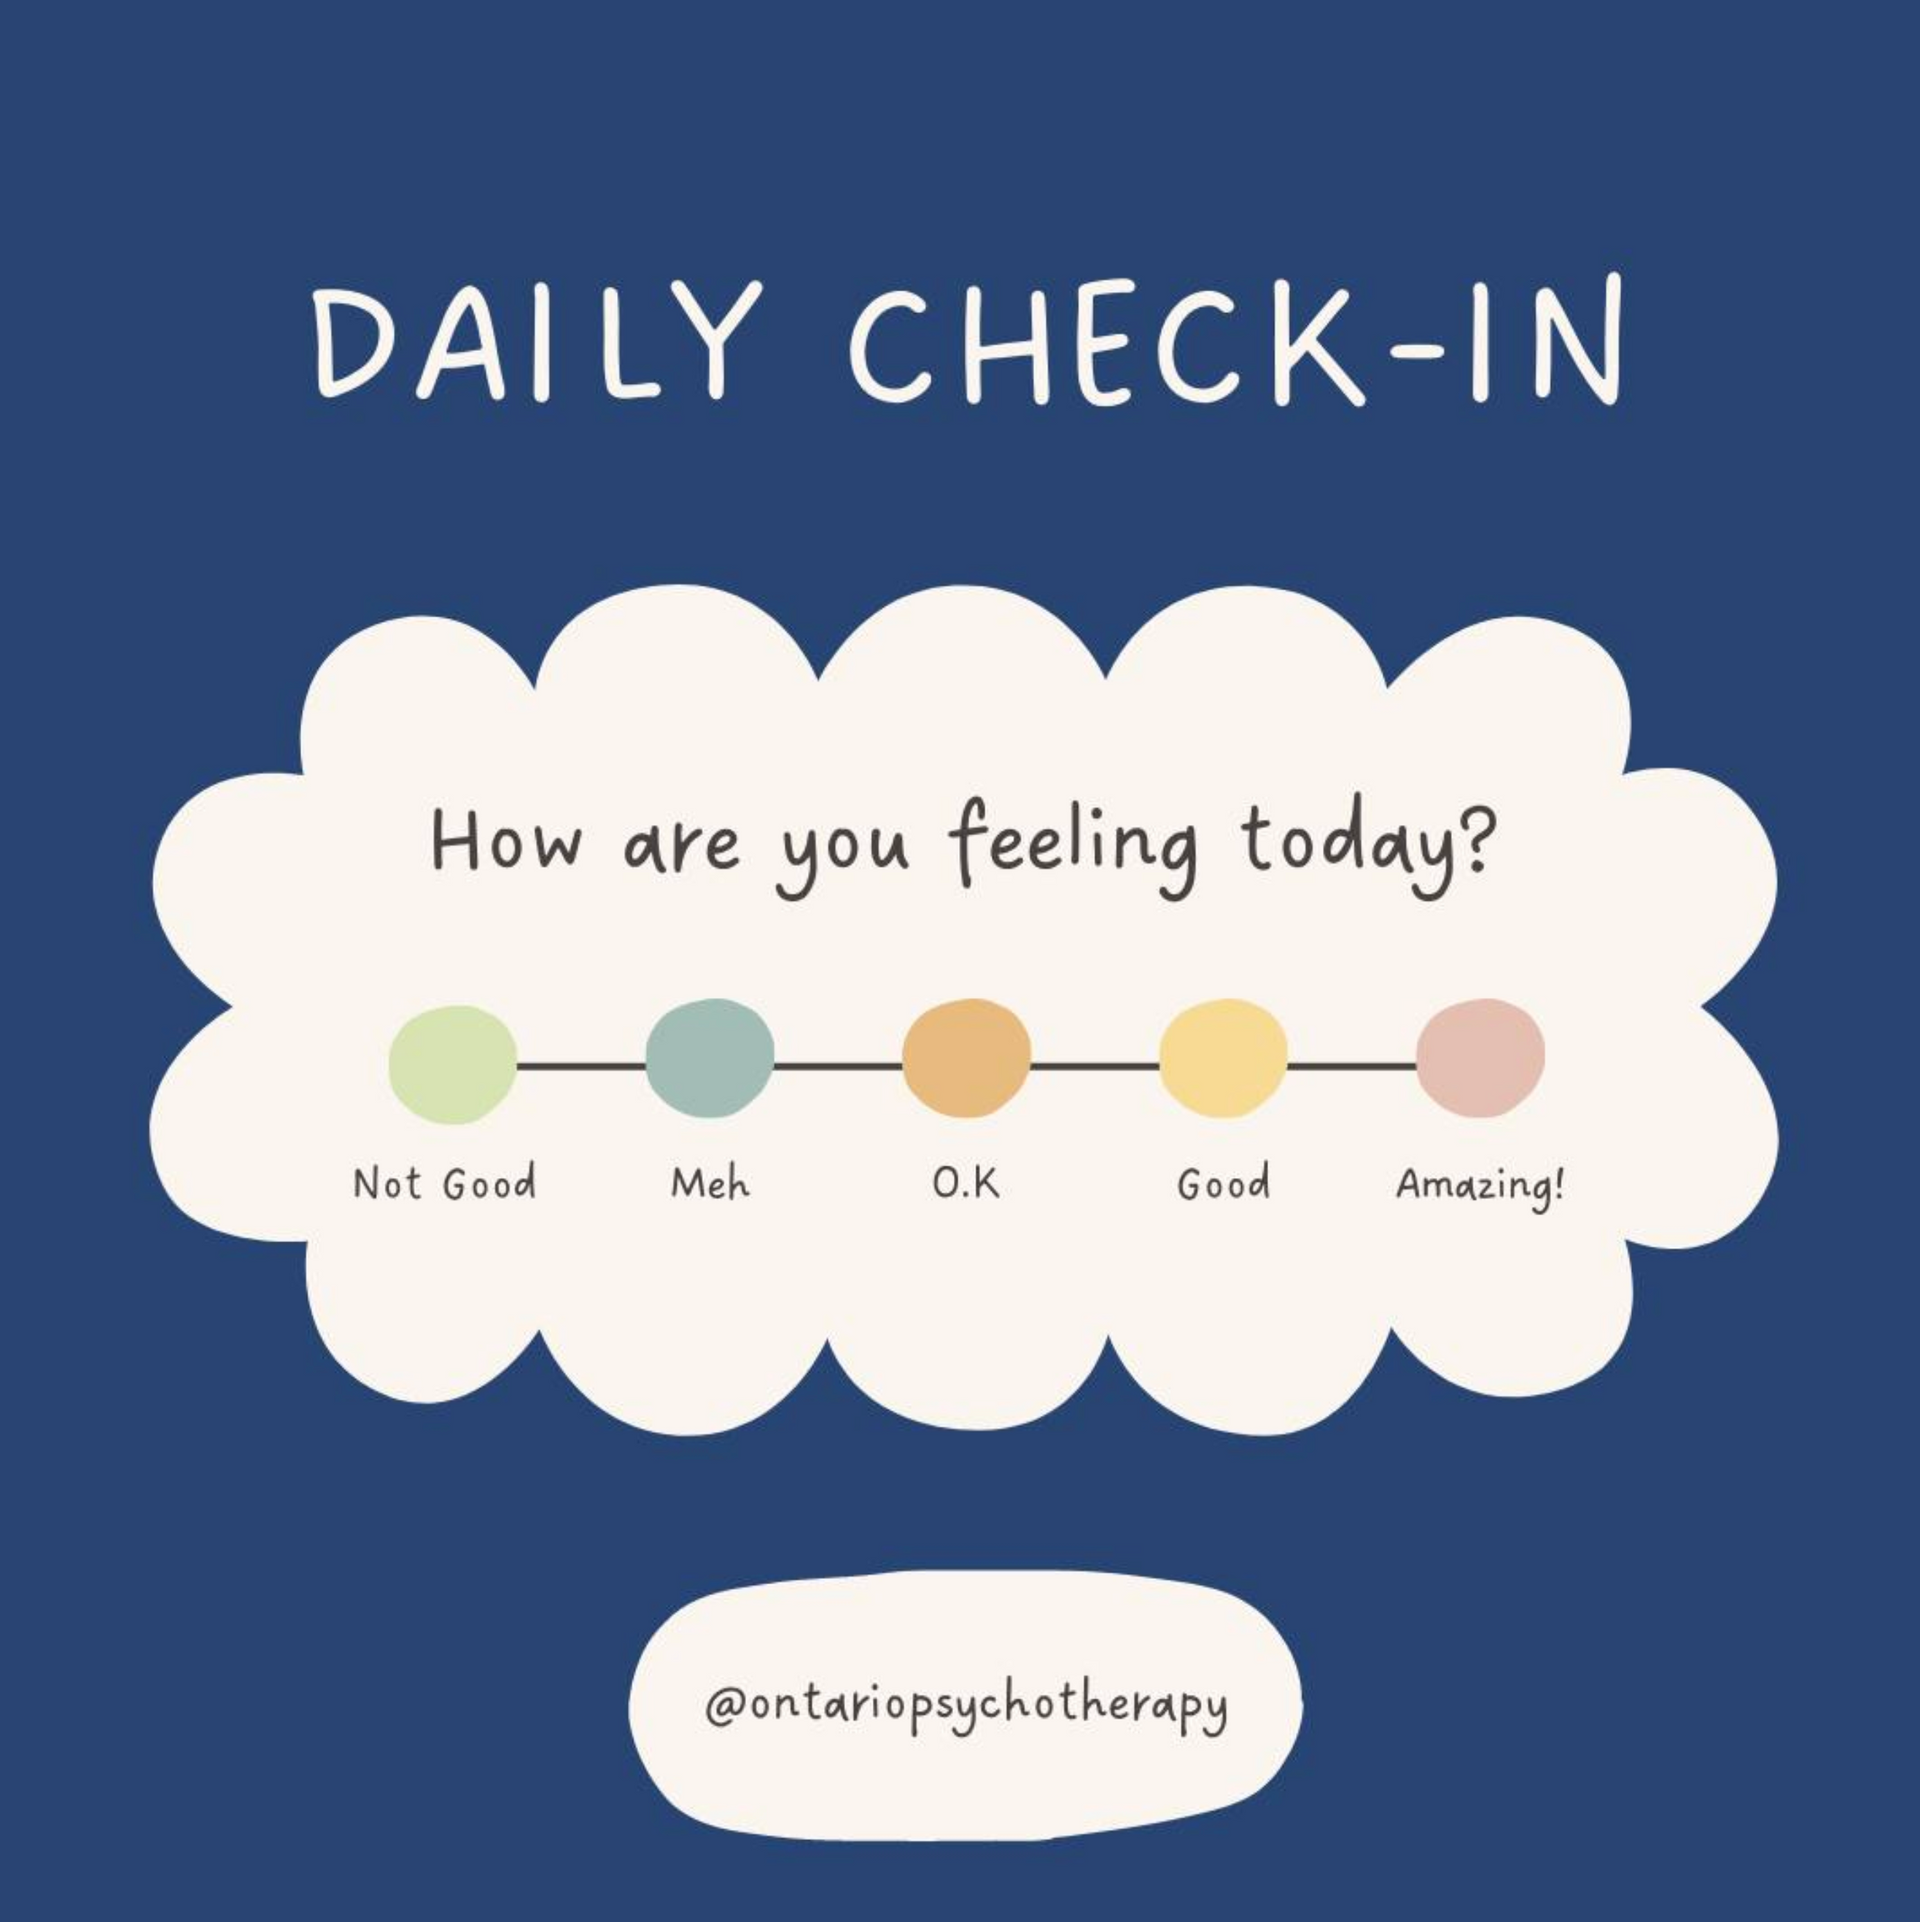 Un enregistrement quotidien pour savoir comment vous vous sentez aujourd'hui.